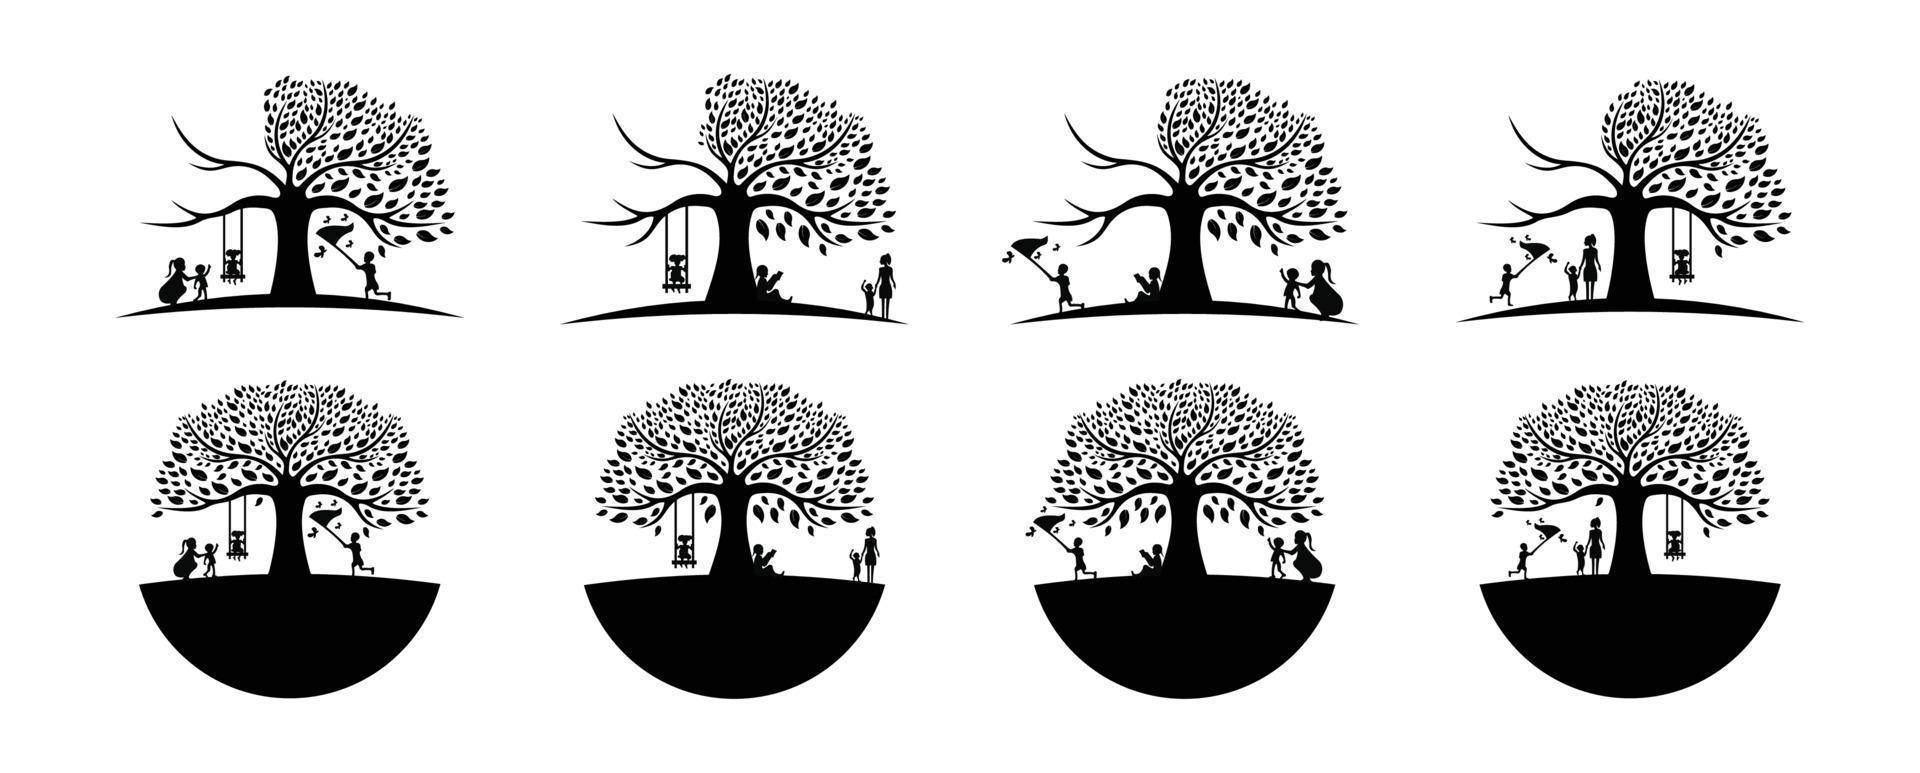 kinderen en moeders spelen onder de boom, het zwarte eikenboomlogo en de wortels ontwerpen vectorillustratie vector